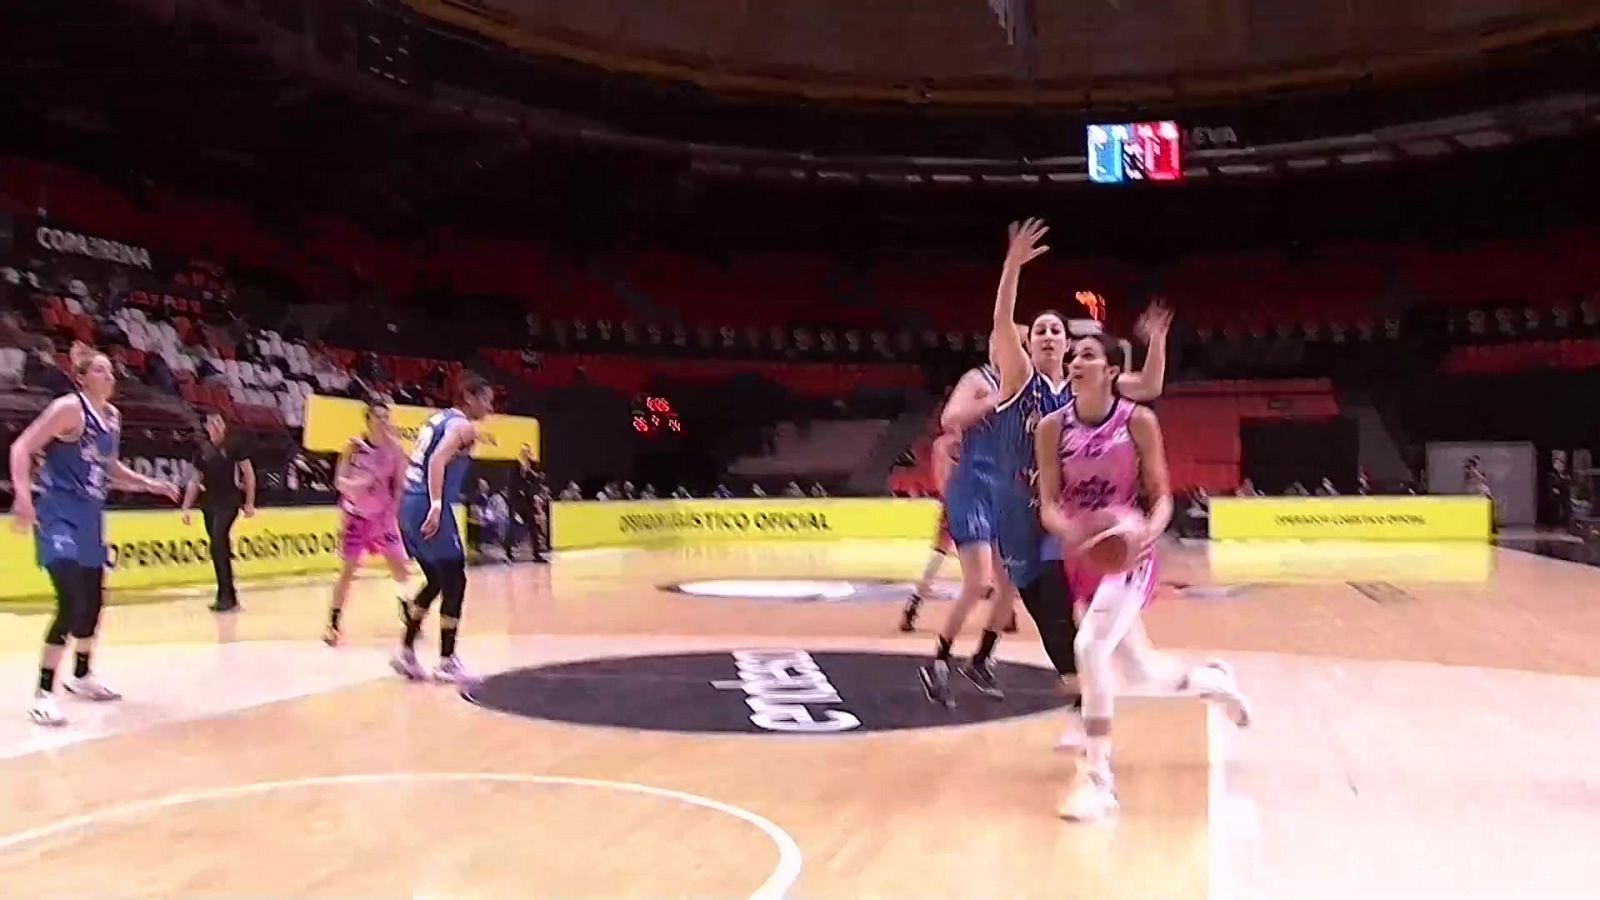 Baloncesto - Copa de la Reina 2021. 1/4 Final: Perfumerías Avenida - Durán Maquinaria Ensino Lugo